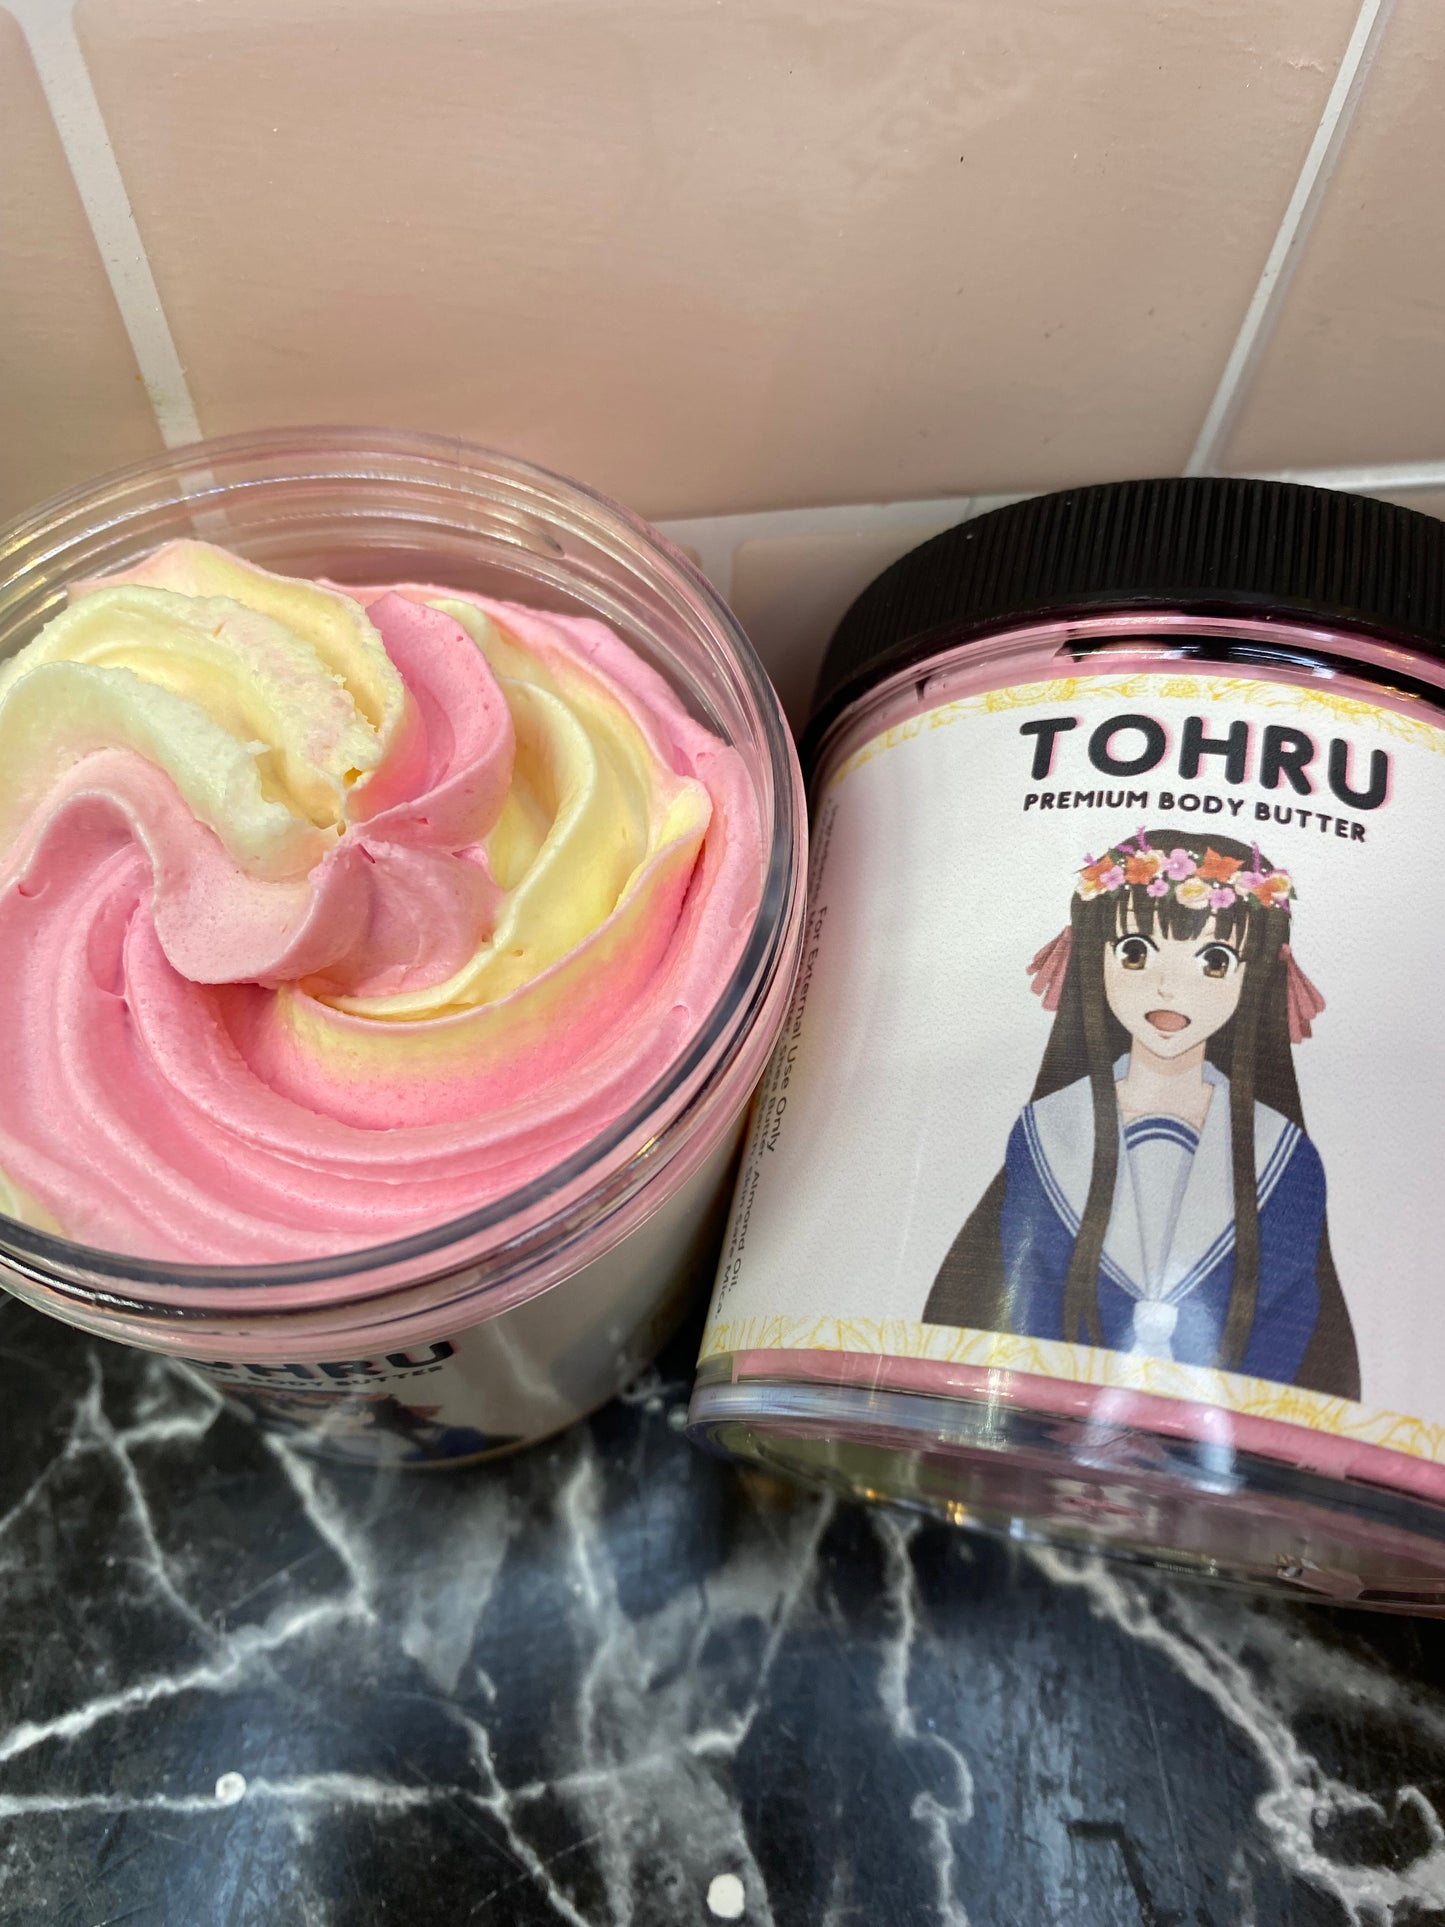 Tohru Body Butter